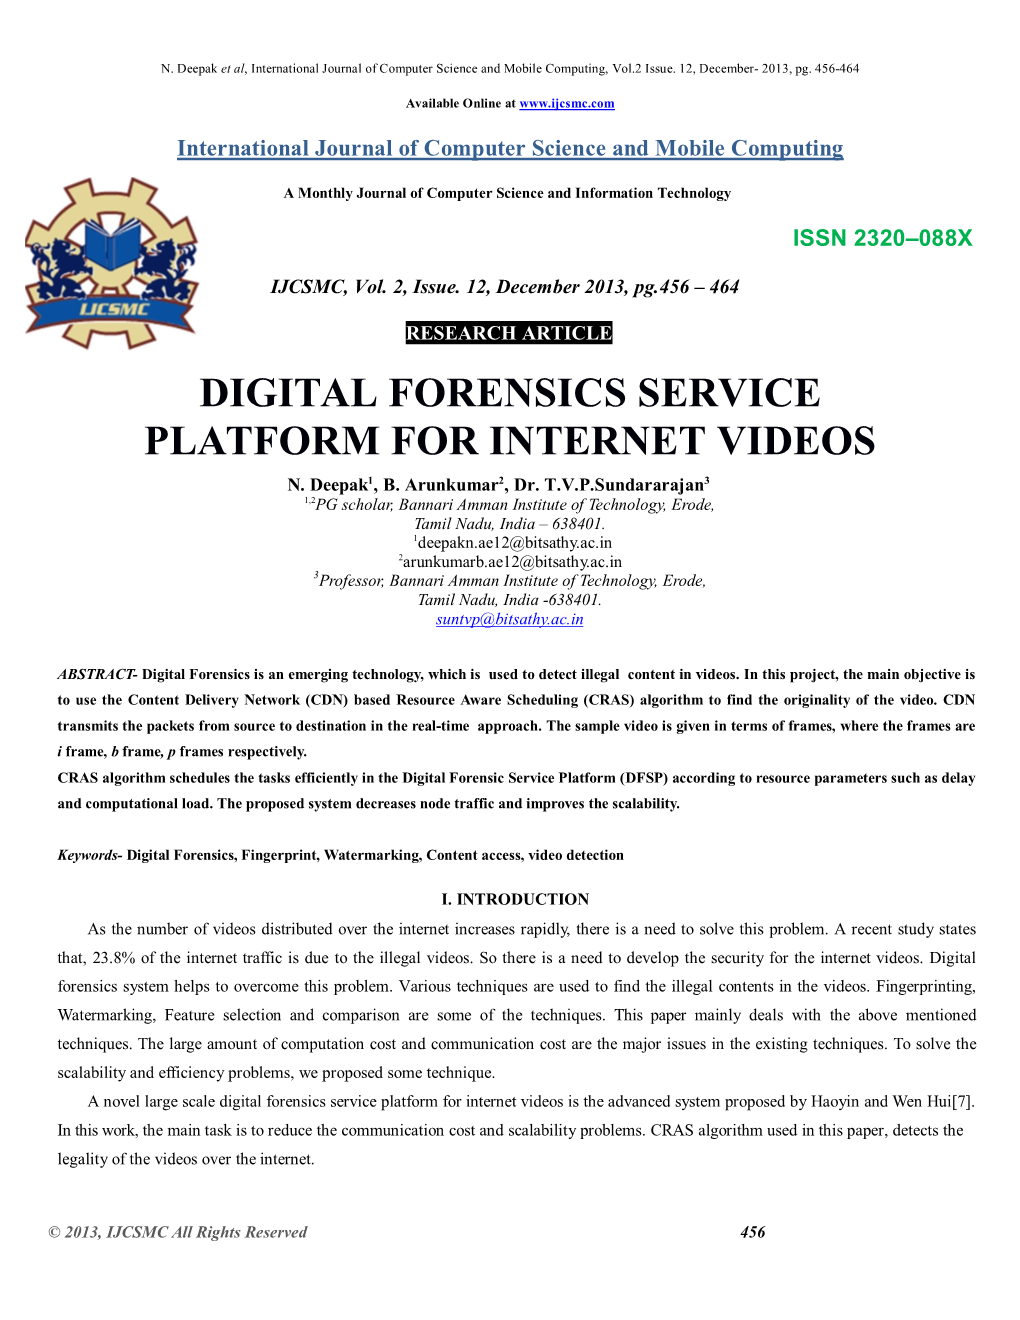 Digital Forensics Service Platform for Internet Videos